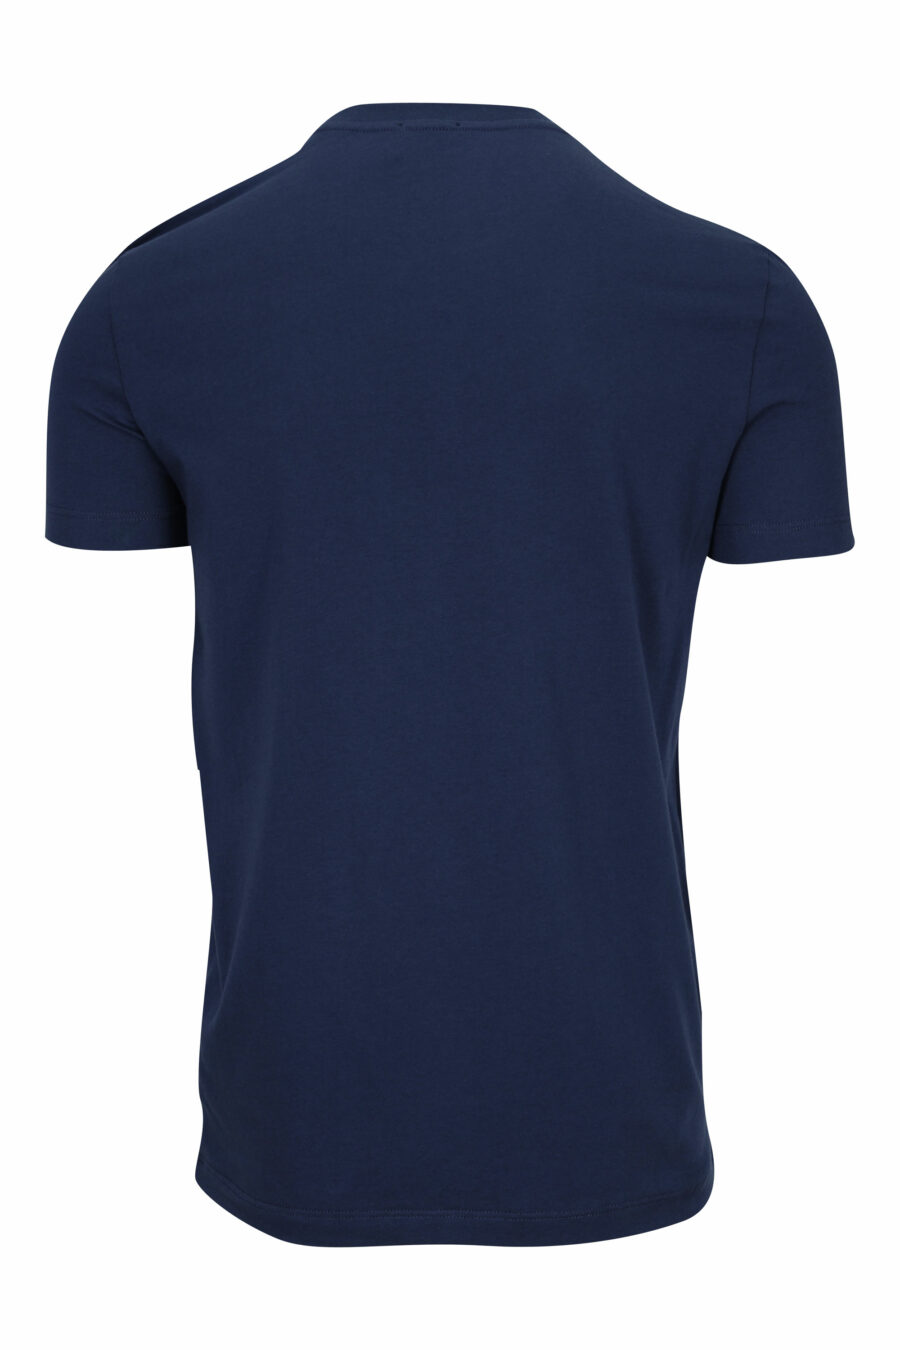 Dark blue T-shirt with white underwear minilogue - 8032674811684 1